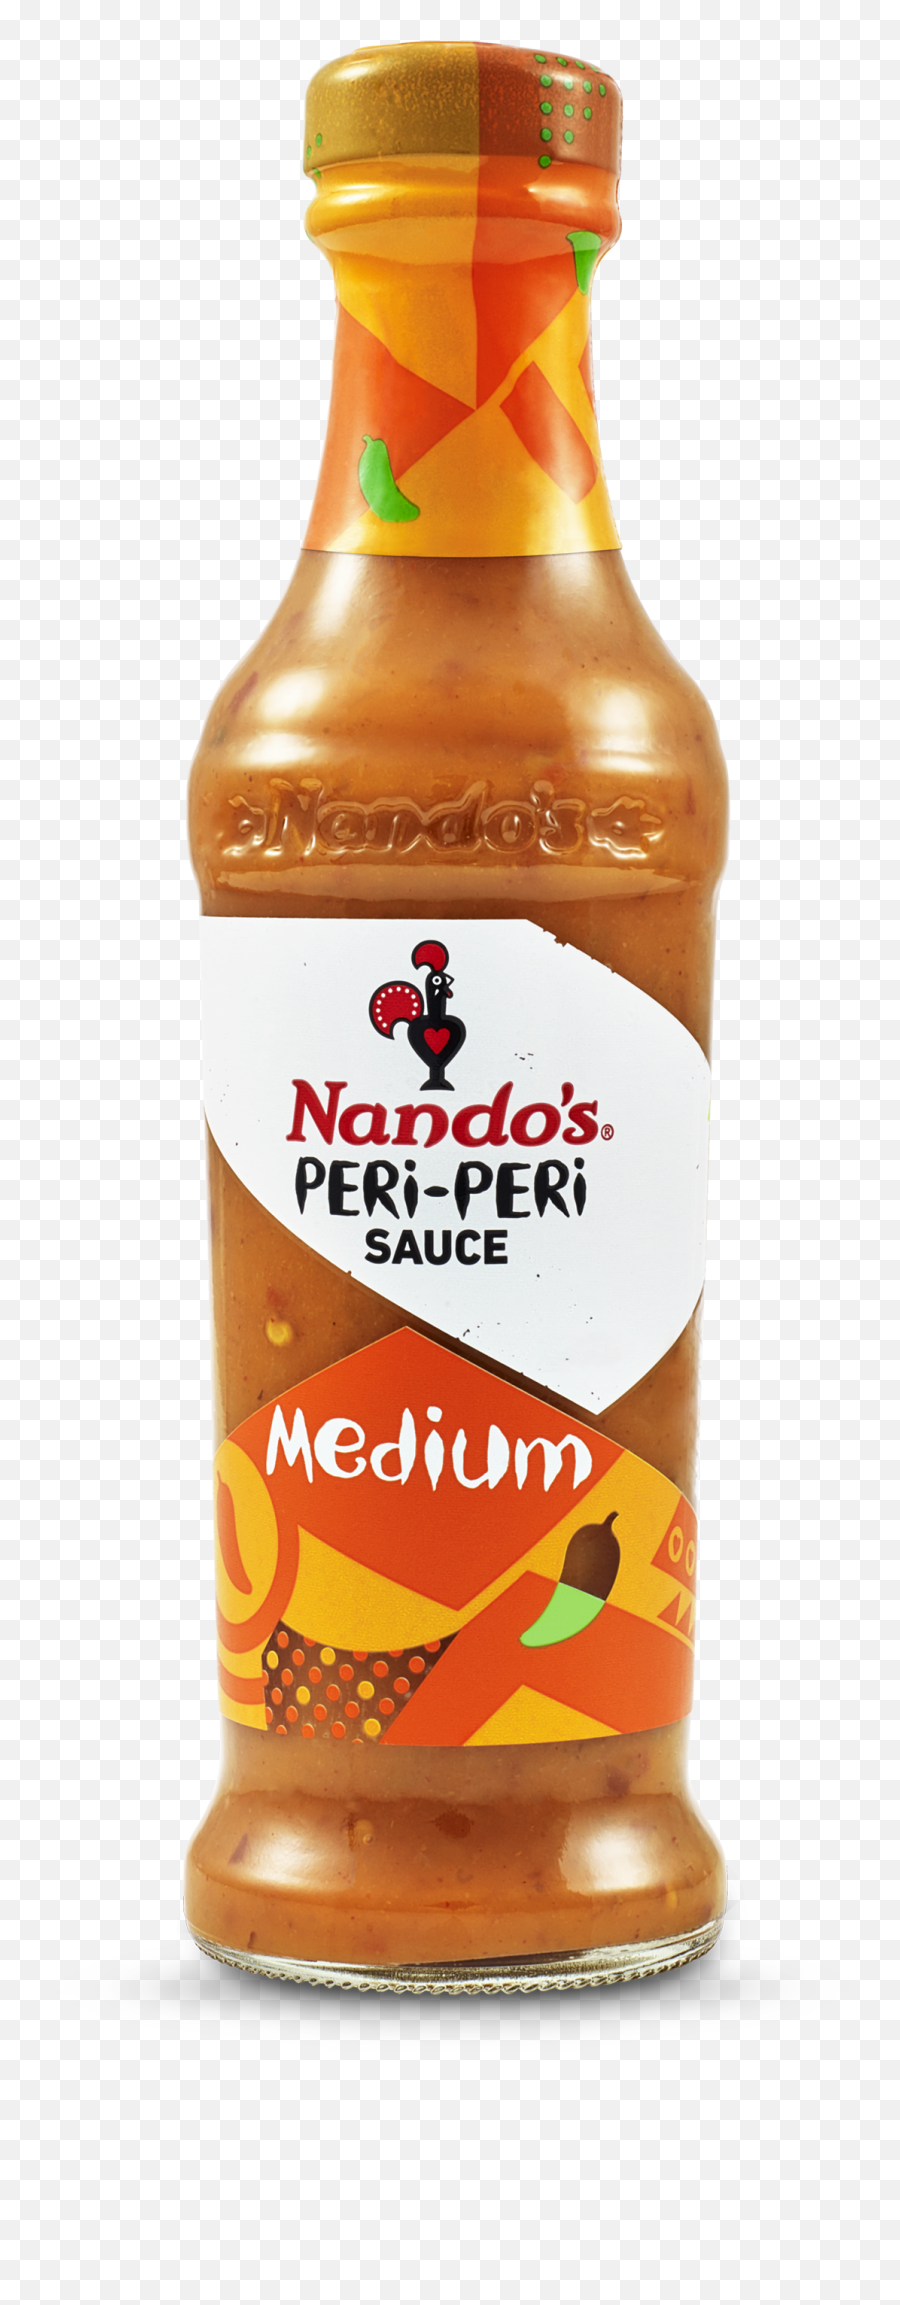 Hot Sauces Available - Nandos Xx Hot Sauce Png,Hot Sauce Png